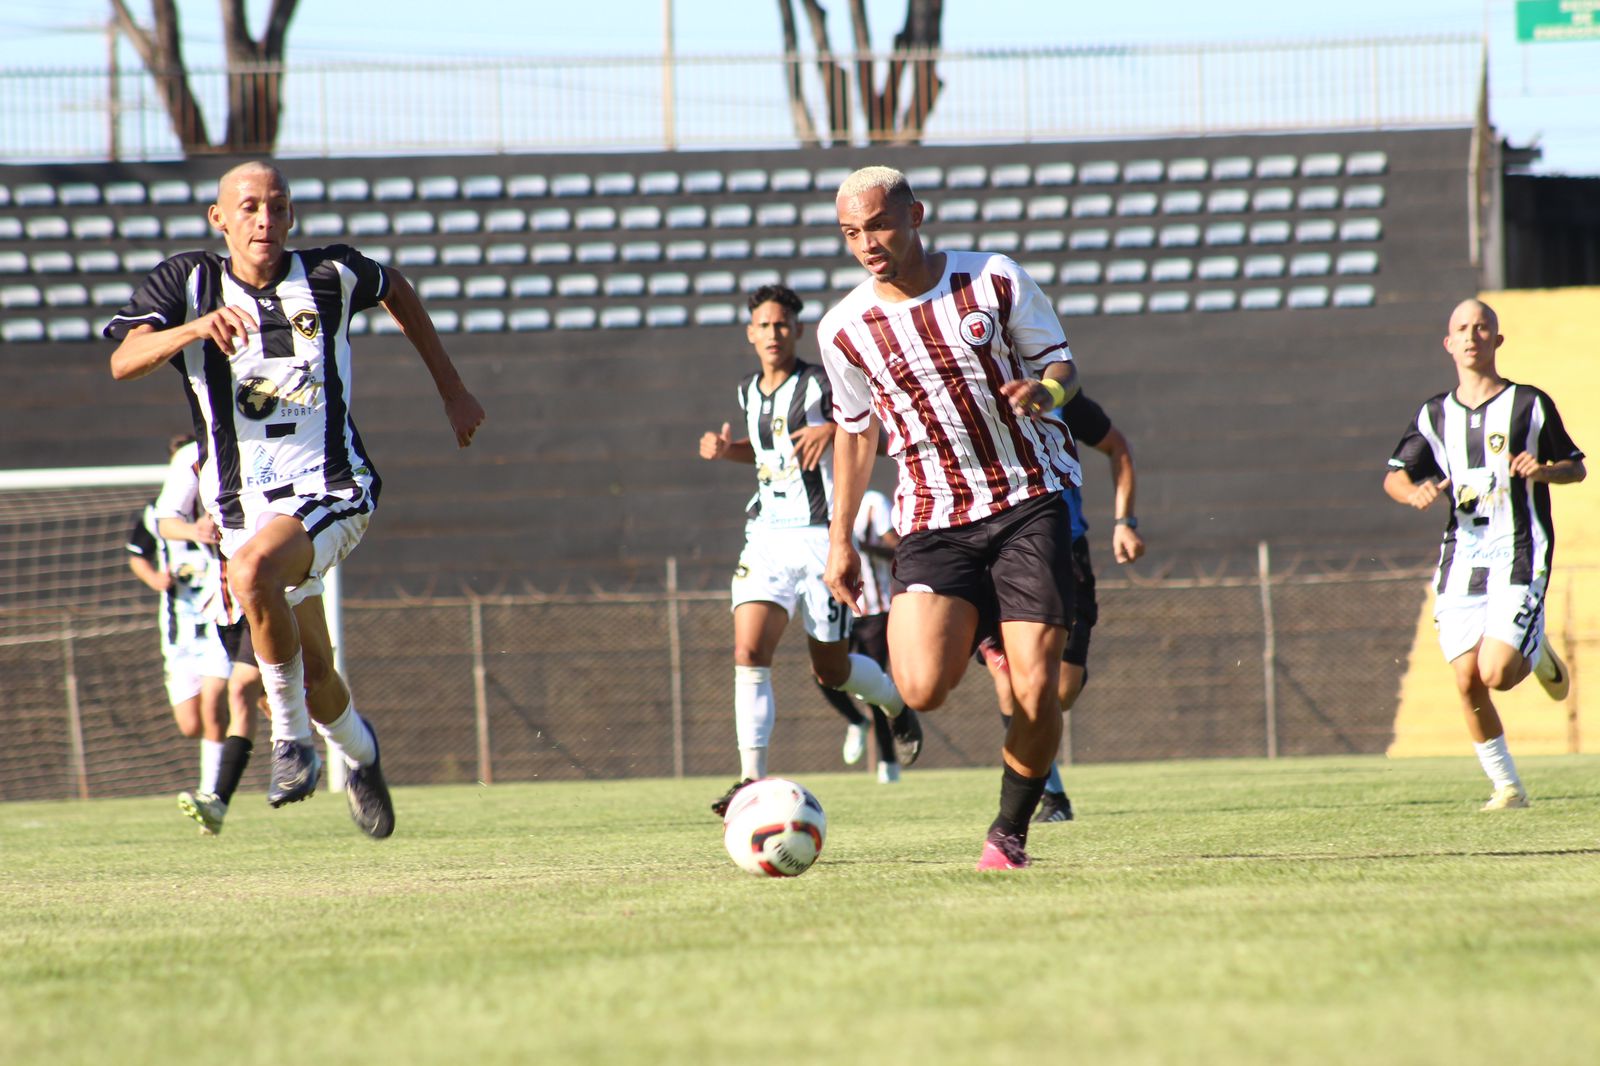 Felipe Clemente marca quatro vezes na goleada do Ceilandense sobre o Botafogo por 7 a 0 pela segunda rodada da Segundinha - Segunda Divisão do Campeonato Candango